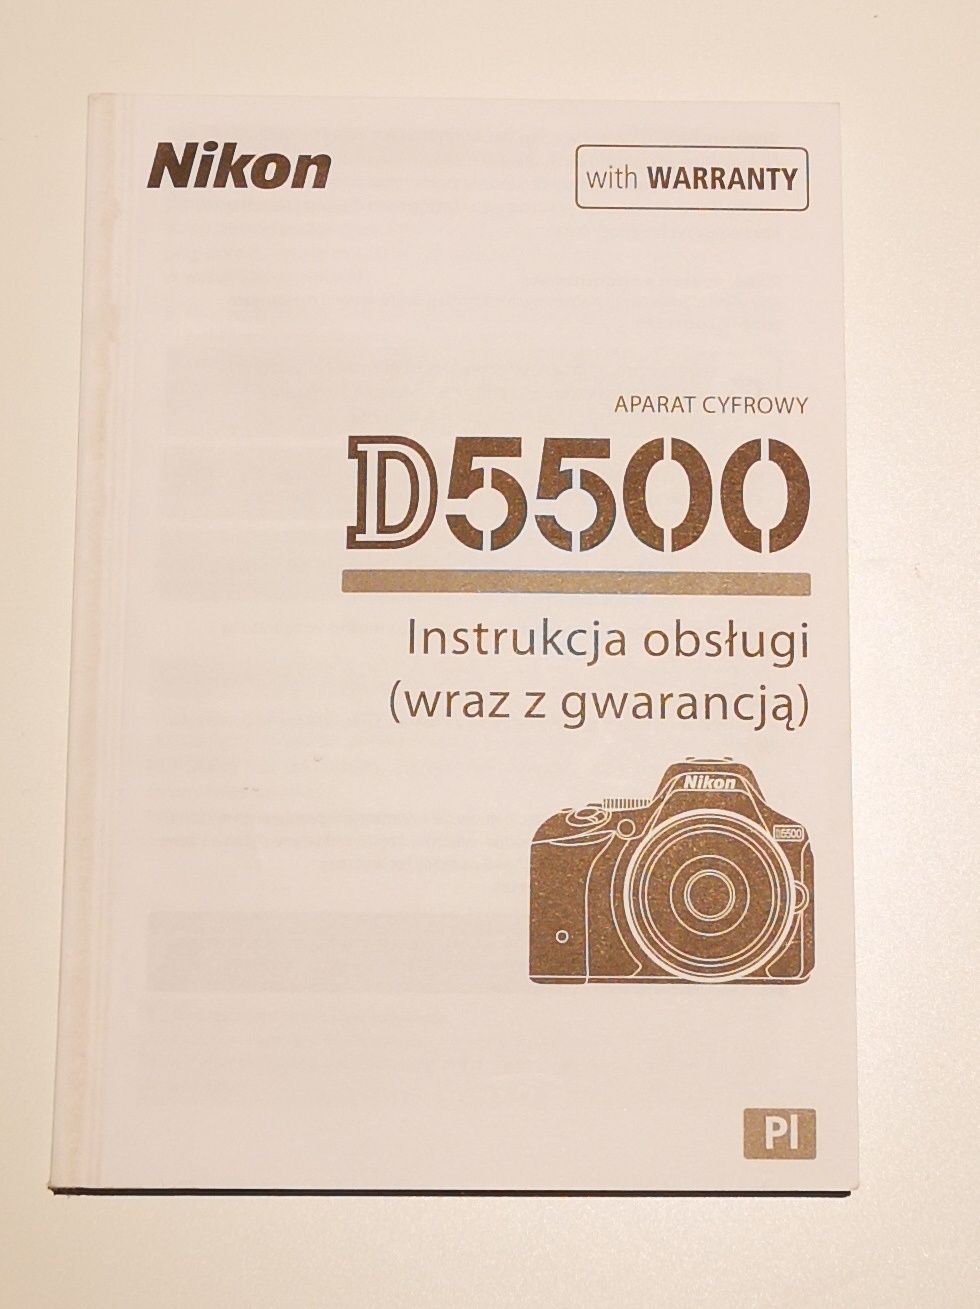 Nikon d5500 + Nikkor 18-200 VR  - 3416 zdj. przebiegu - jak nowy